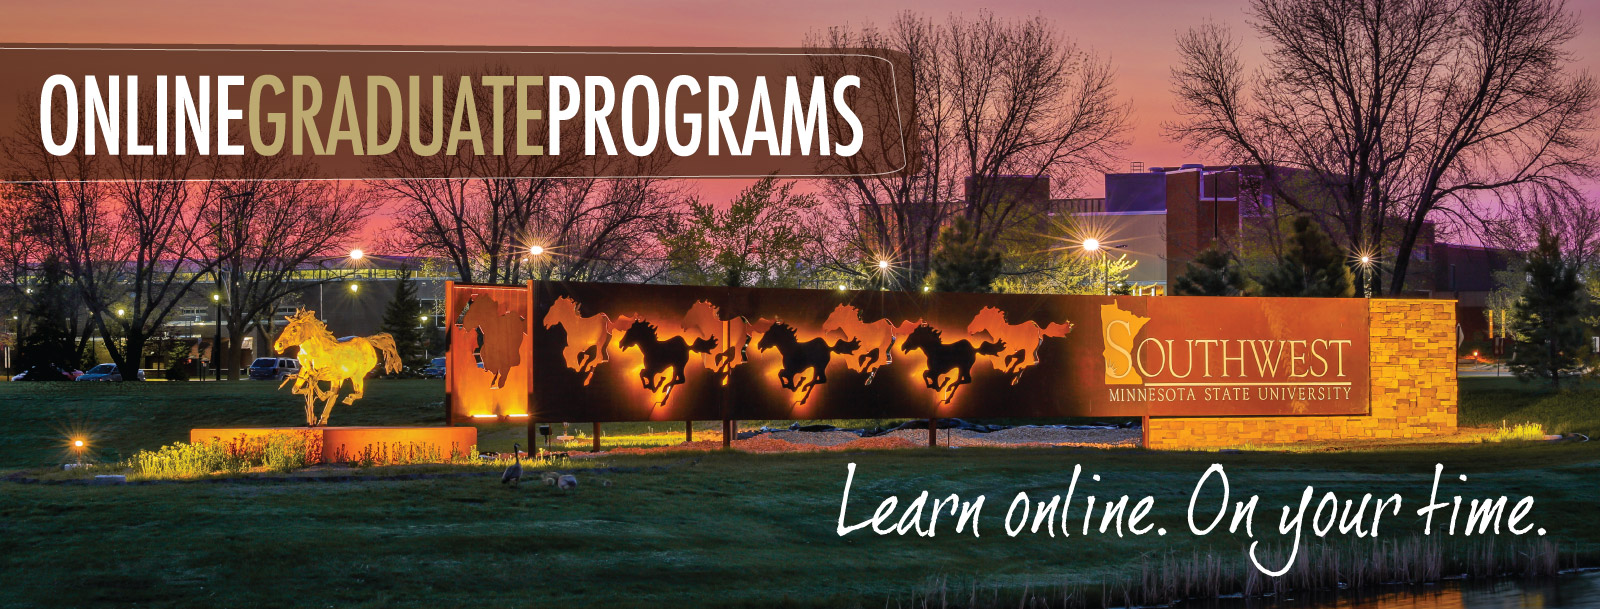 grad school - online programs banner